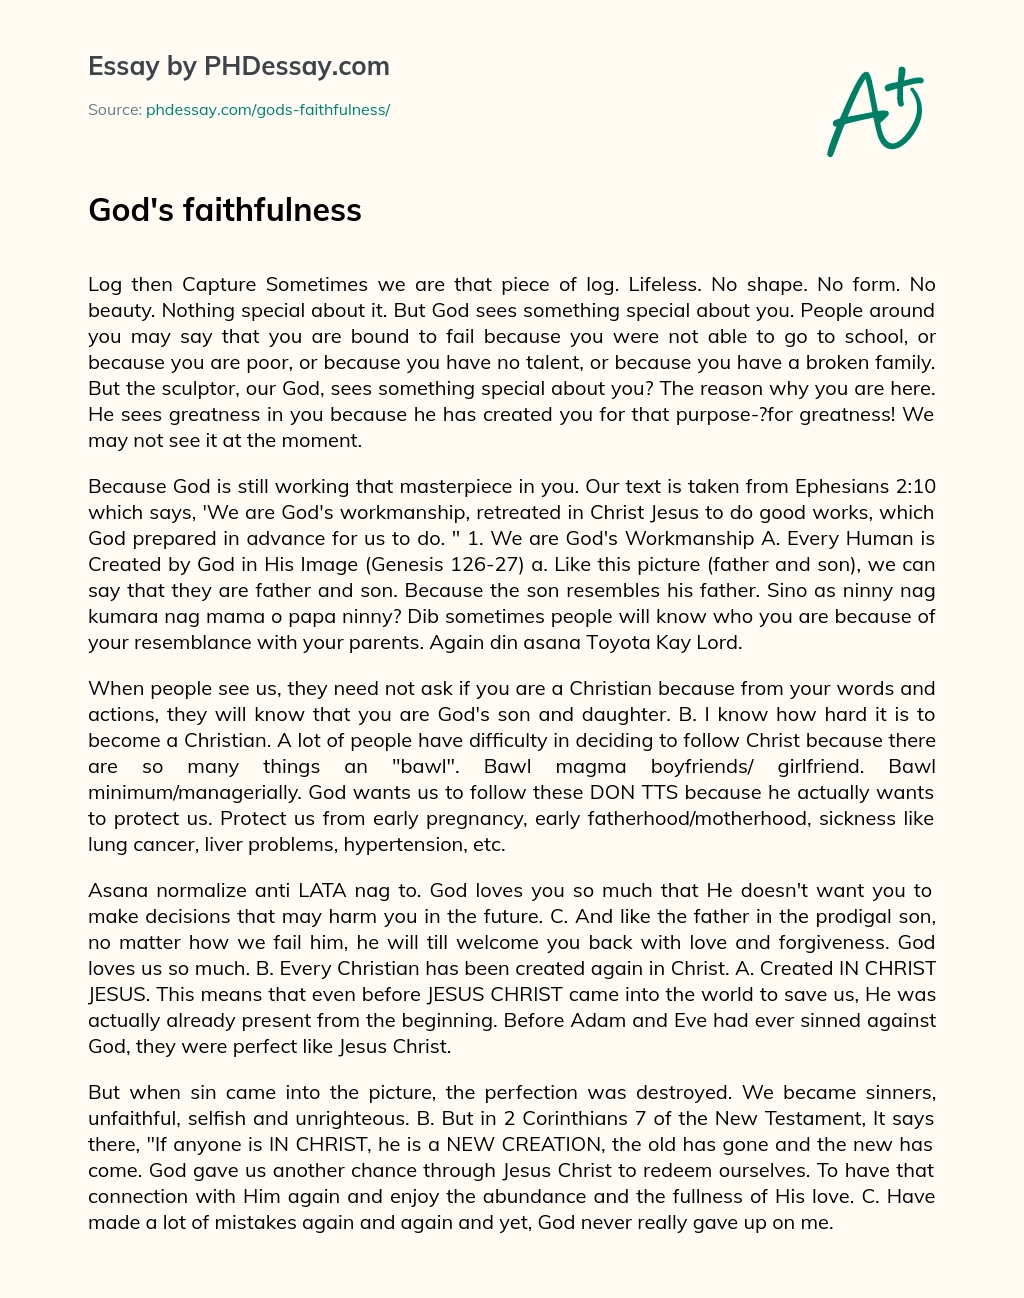 essay god's faithfulness